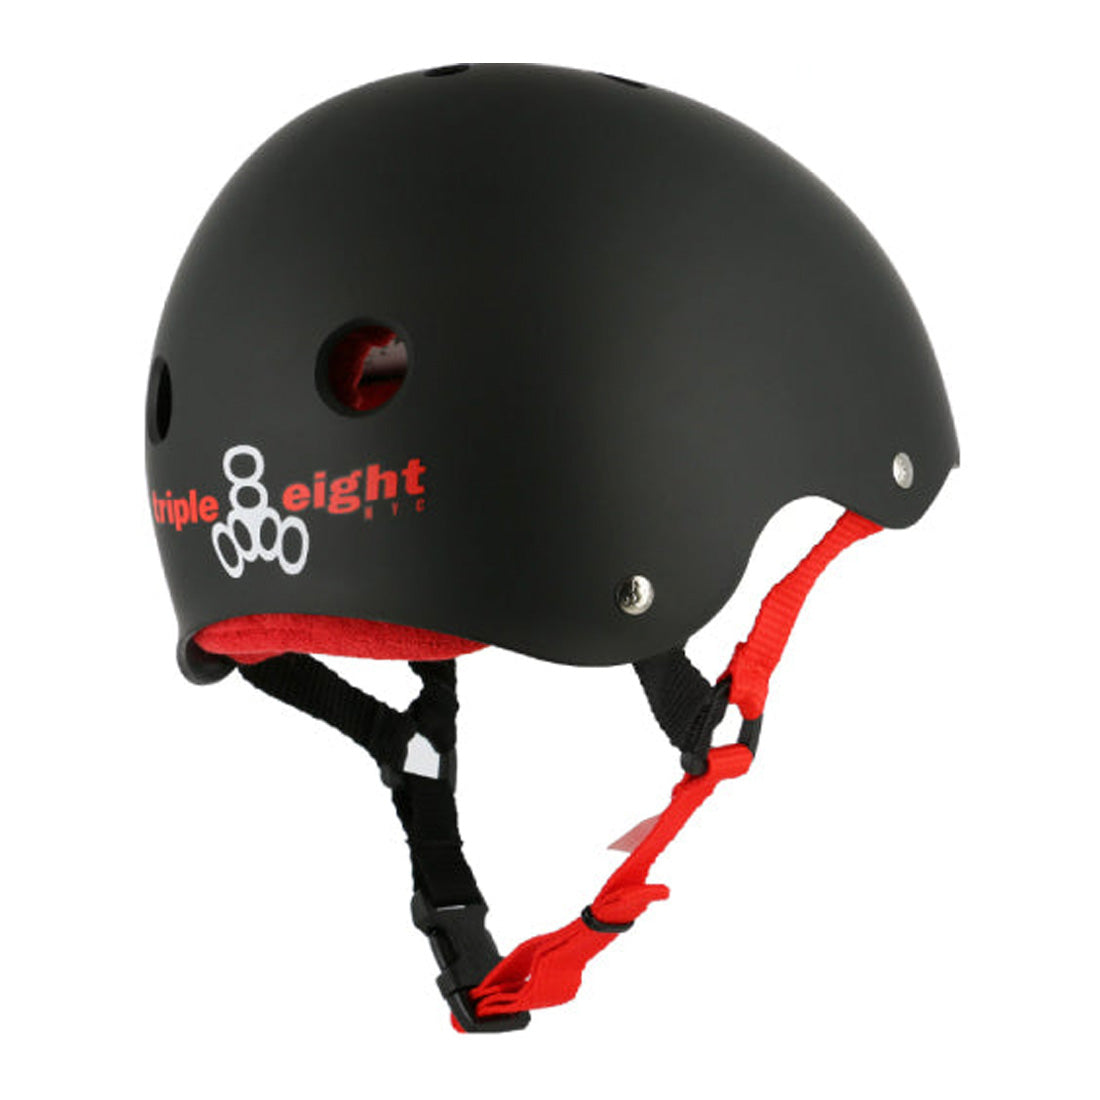 Triple 8 Skate SS Helmet - Black/Red Rubber Helmets